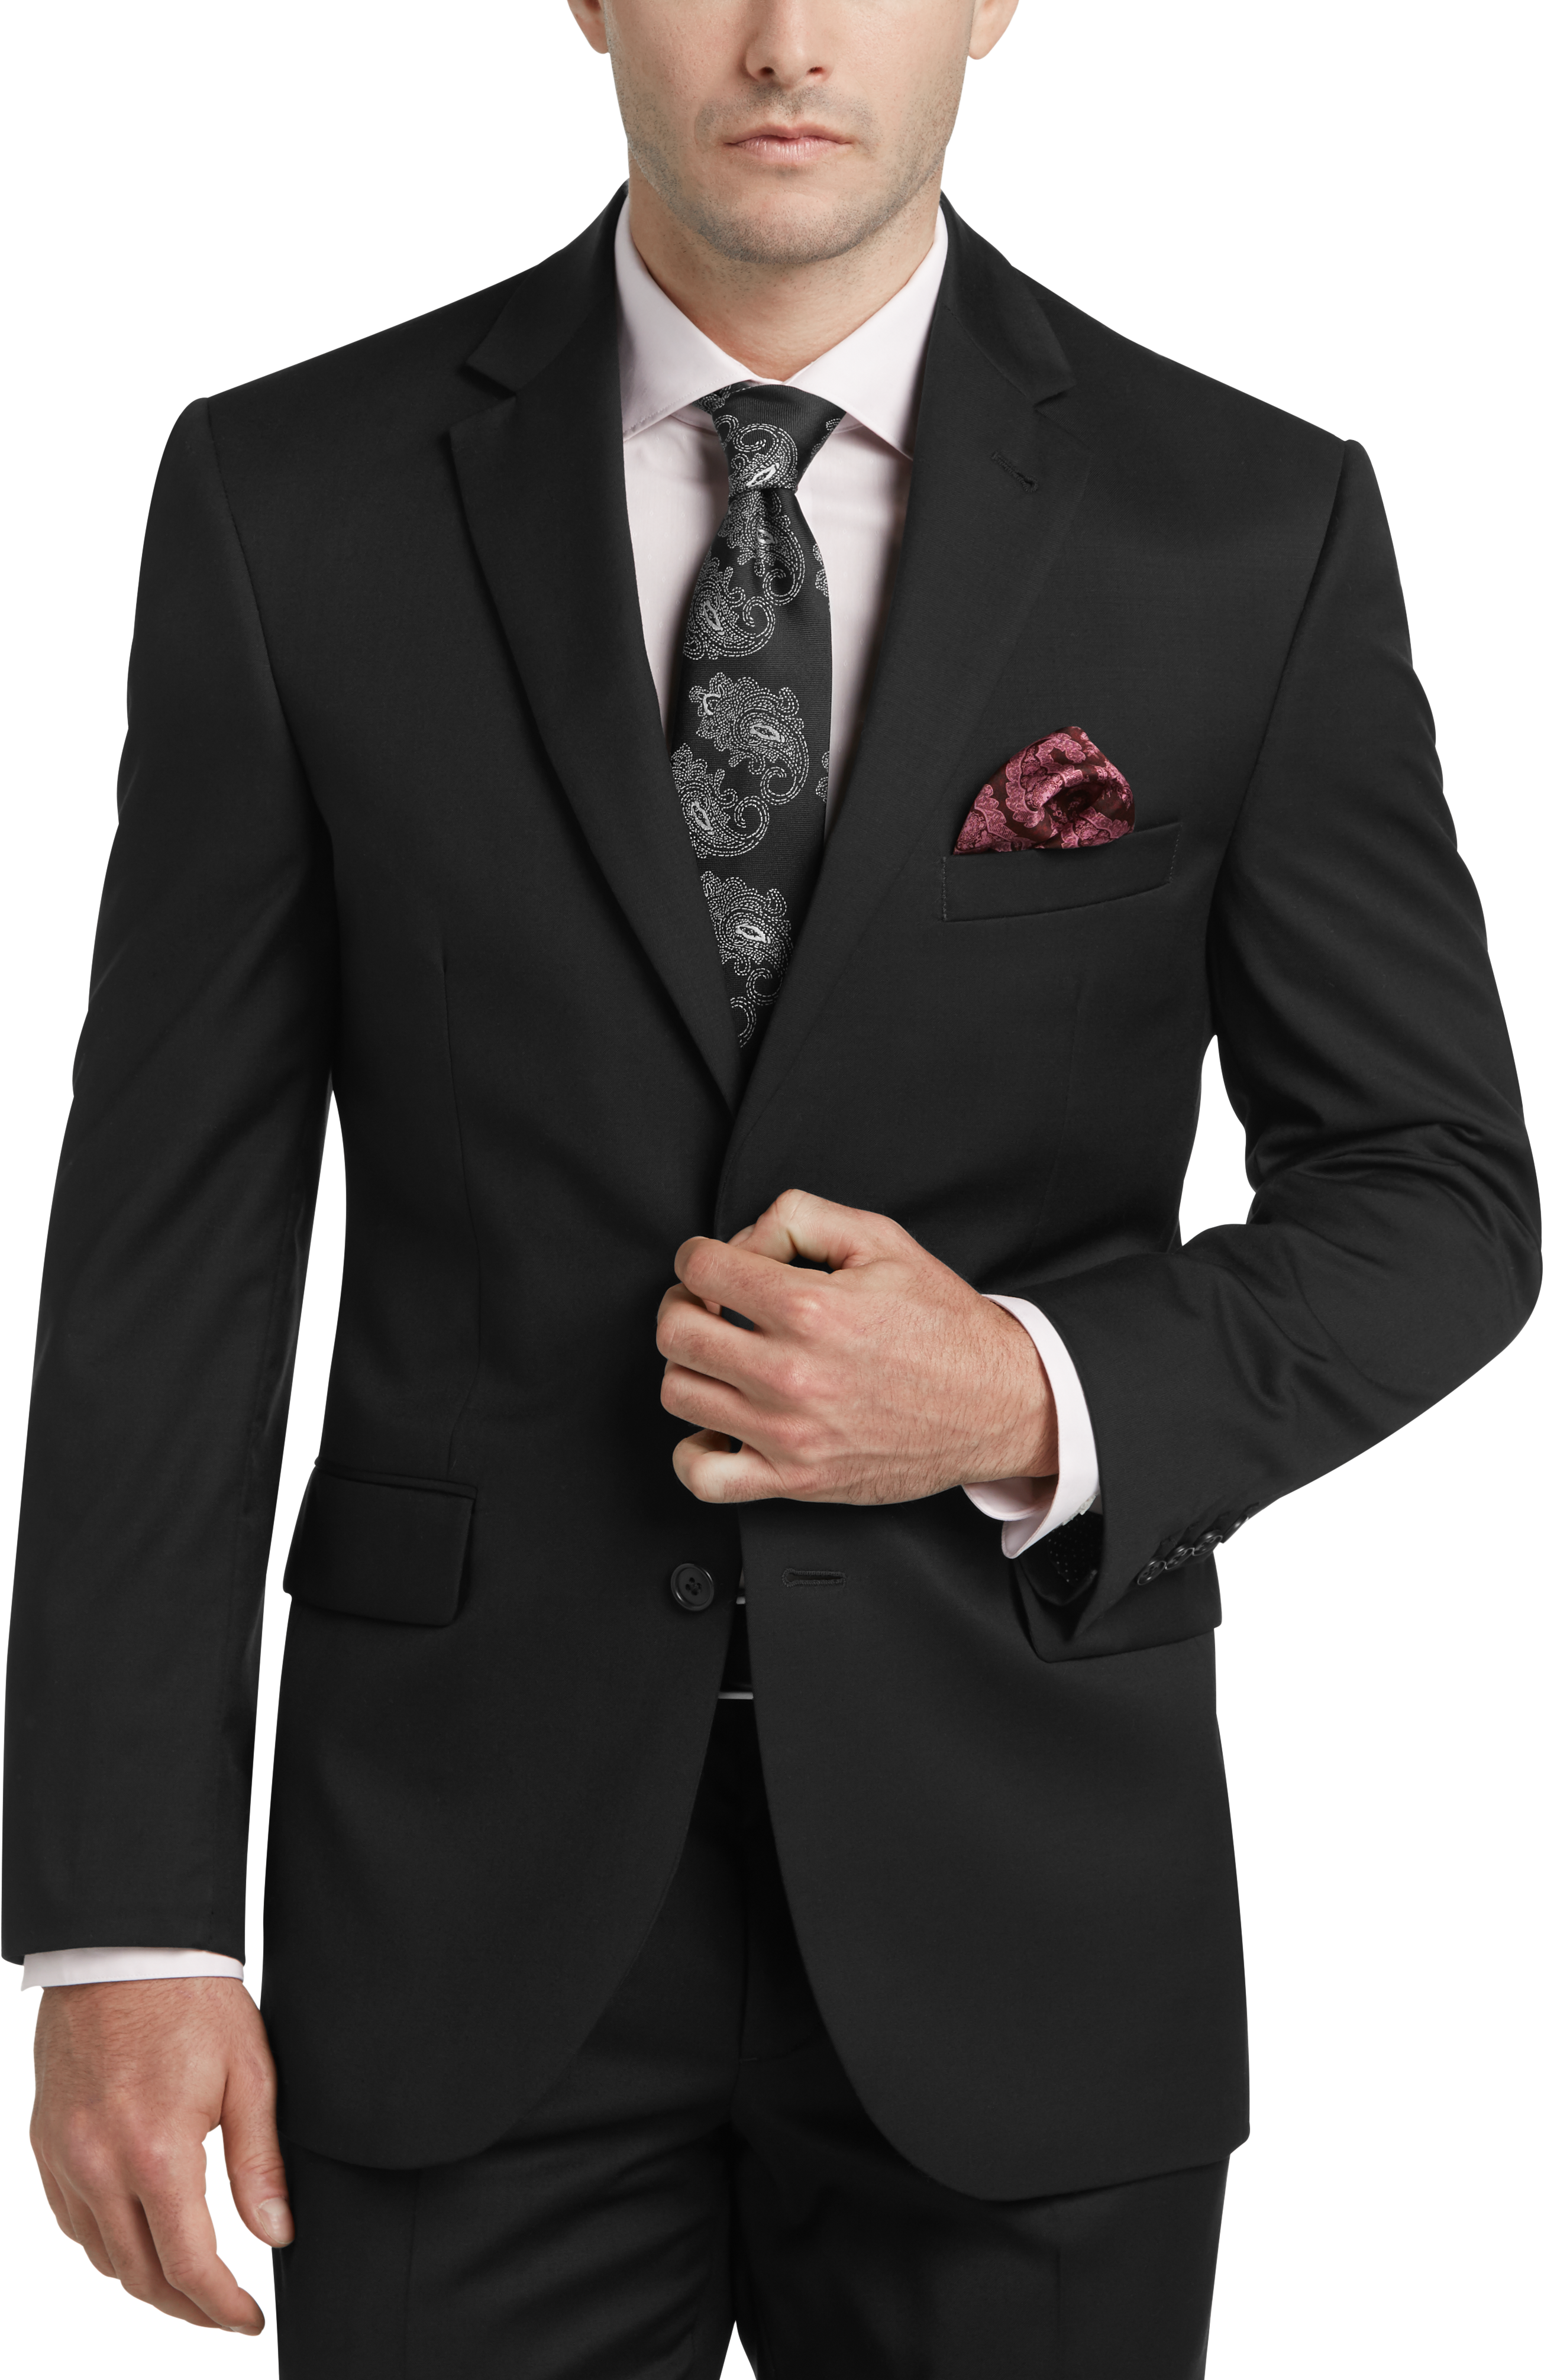 JOE Joseph Abboud Black Slim Fit Suit - Men's Suits | Men's Wearhouse